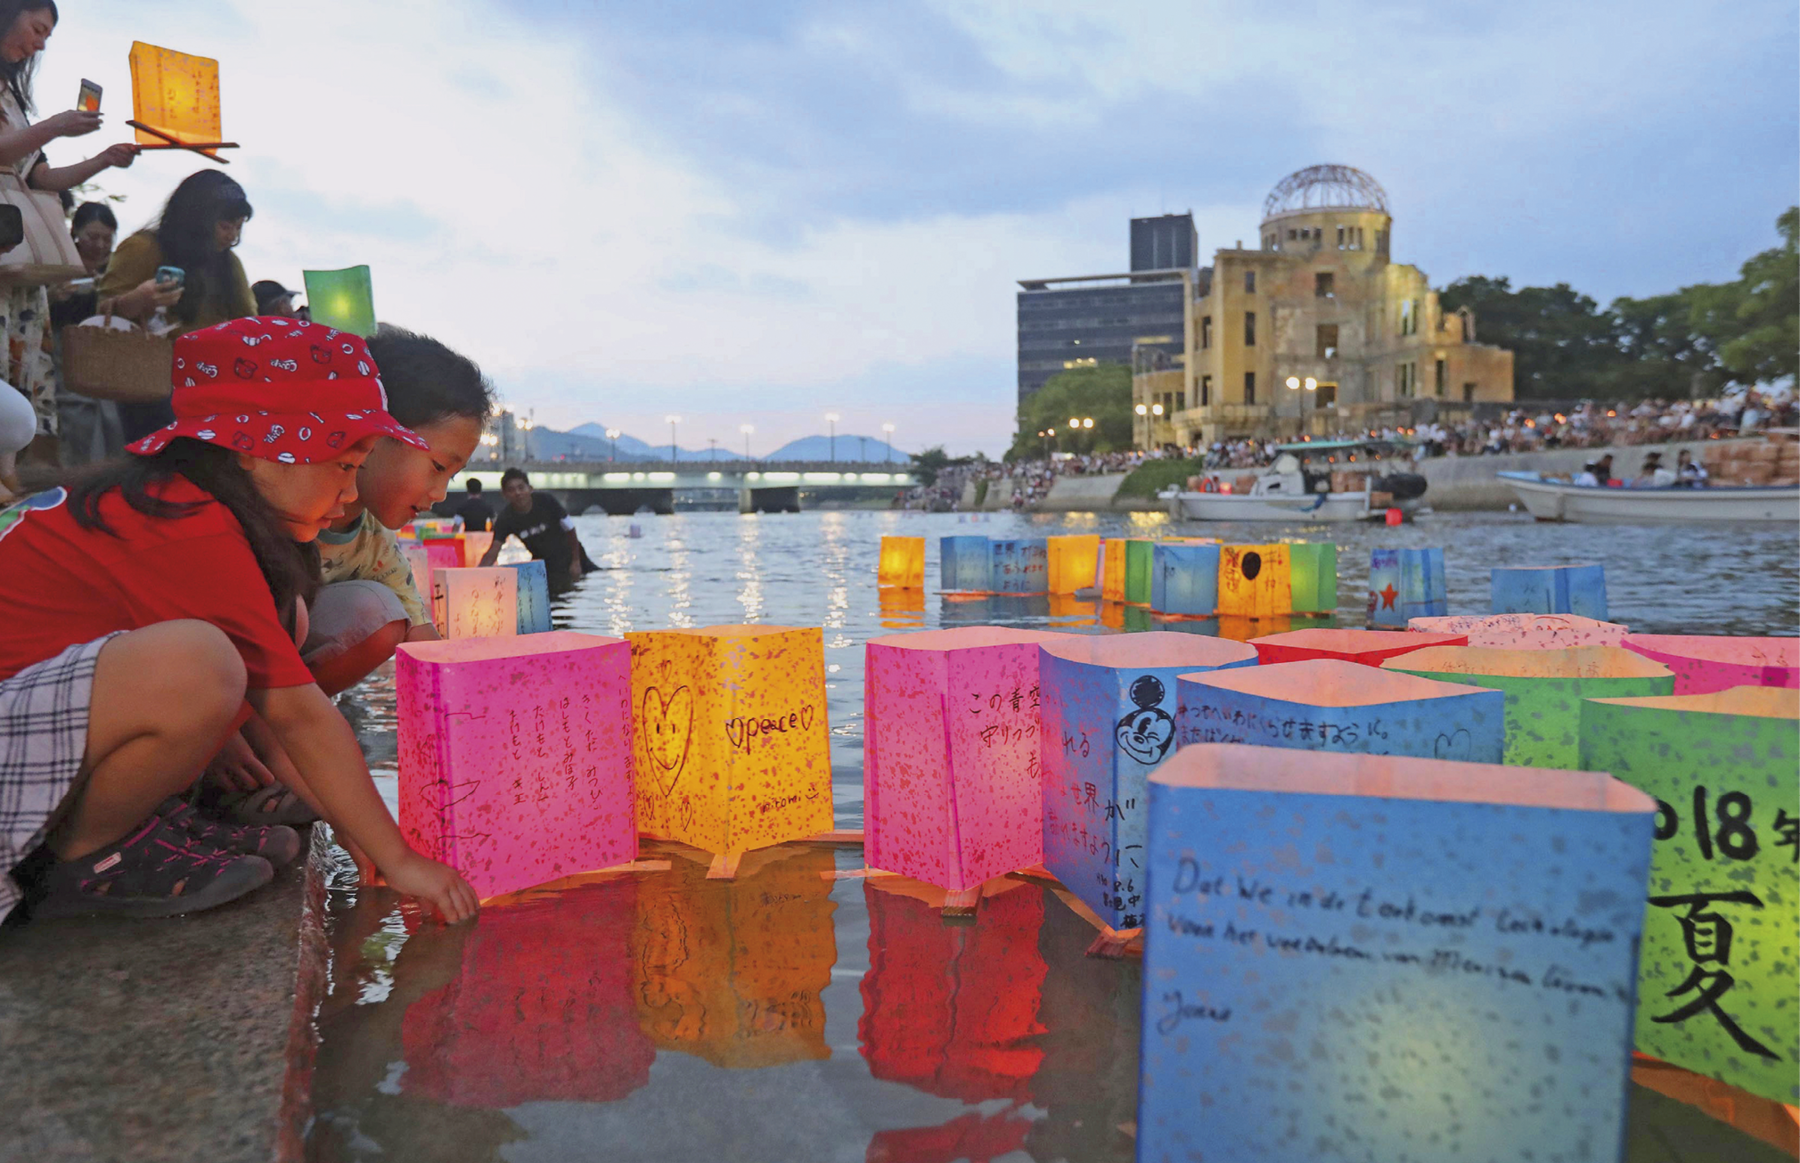 Fotografia. No primeiro plano, crianças e adultos colocando lanternas coloridas de papel em um grande rio. Diversas pessoas nas margens observam. Ao fundo duas construções, uma está em ruínas.